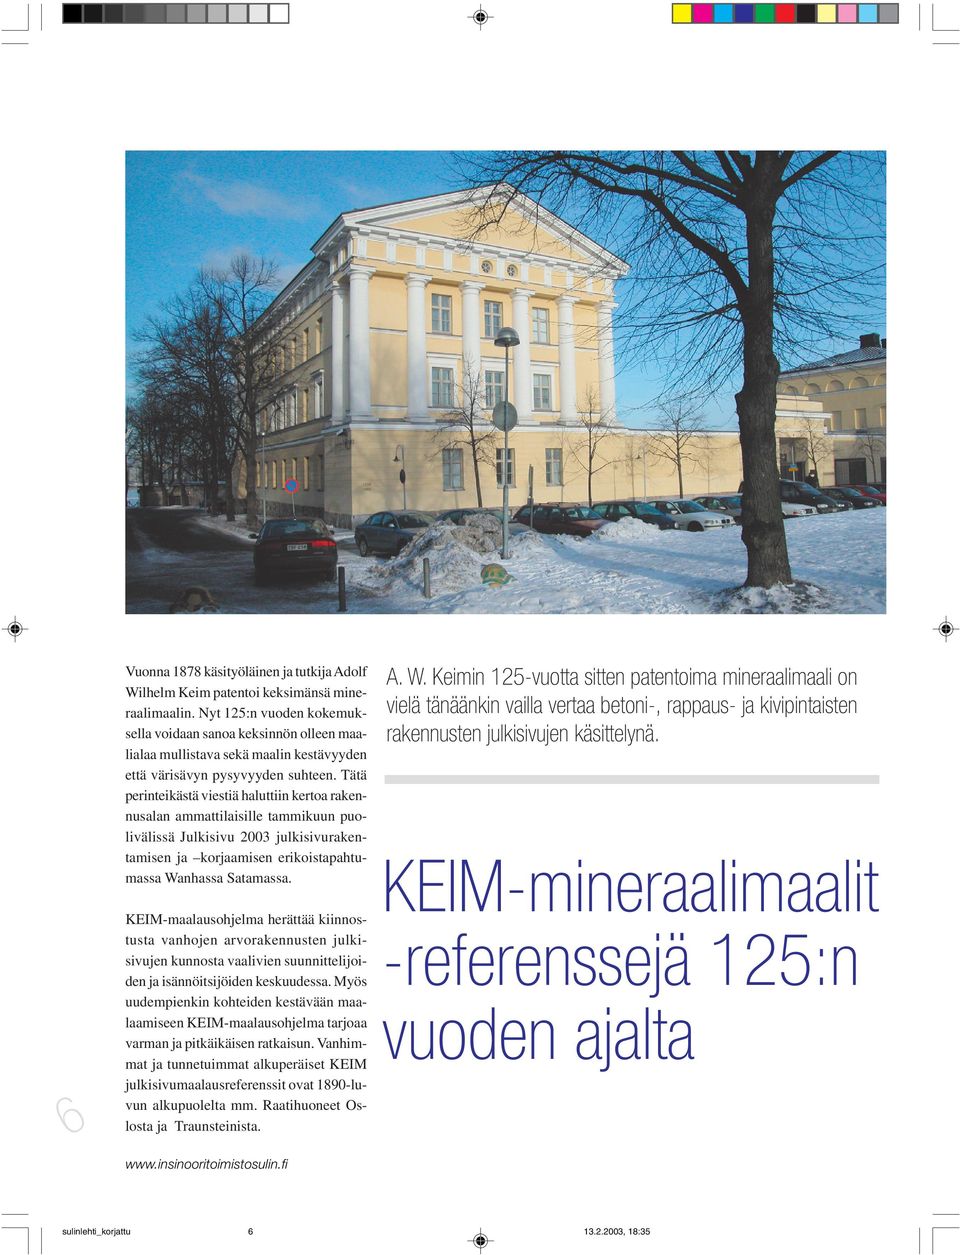 Tätä perinteikästä viestiä haluttiin kertoa rakennusalan ammattilaisille tammikuun puolivälissä Julkisivu 2003 julkisivurakentamisen ja korjaamisen erikoistapahtumassa Wanhassa Satamassa.